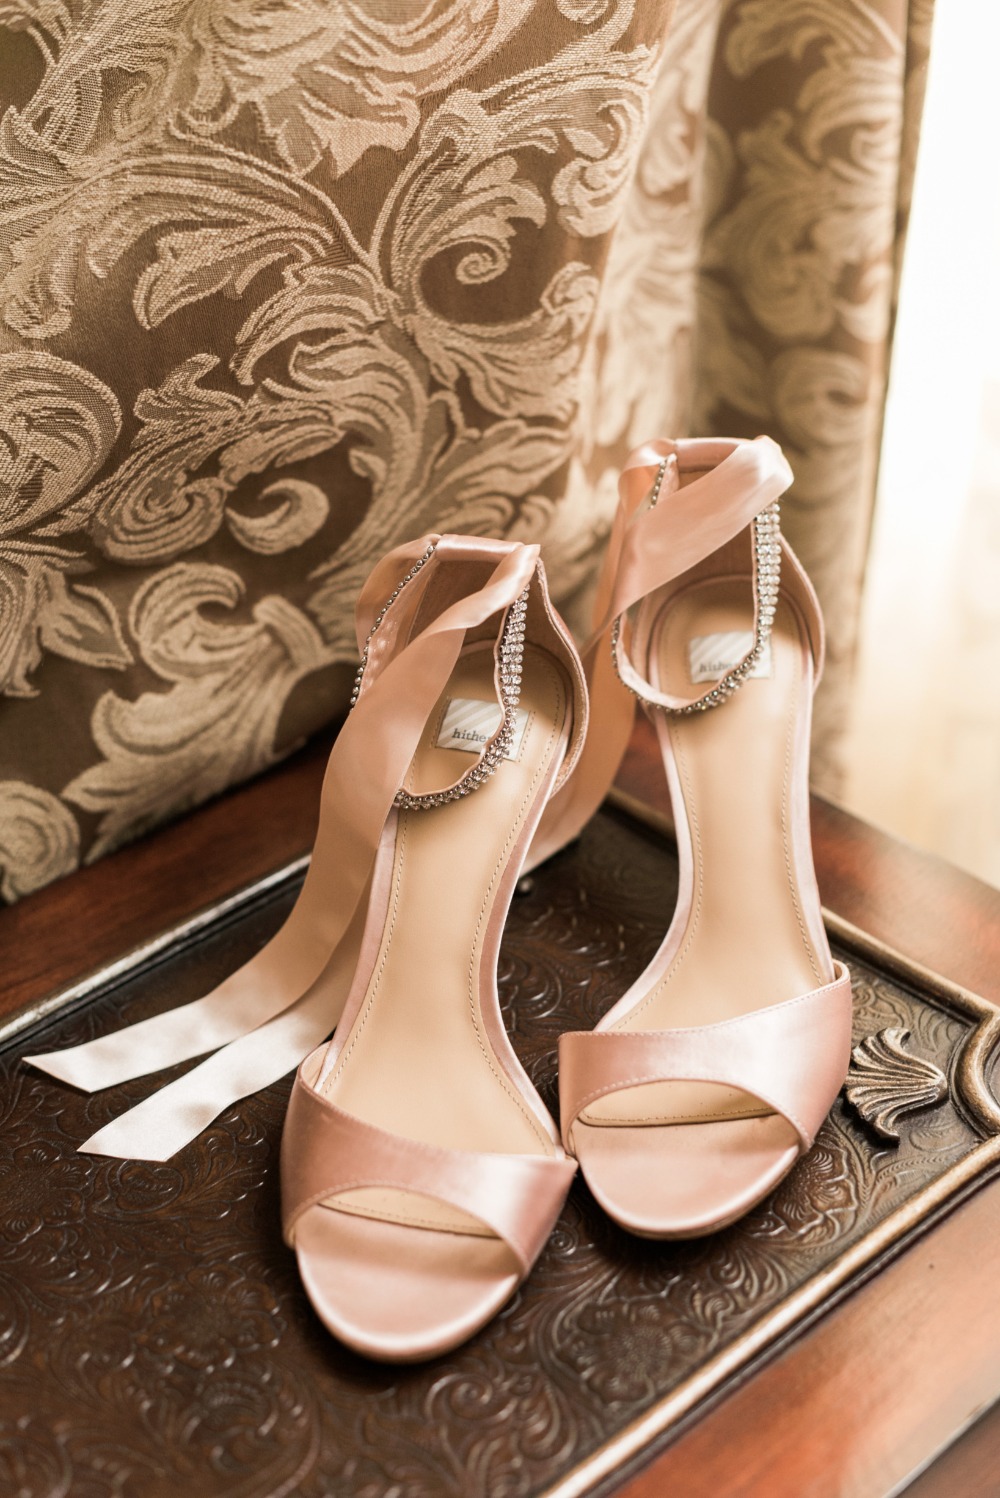 blush pink wedding shoes